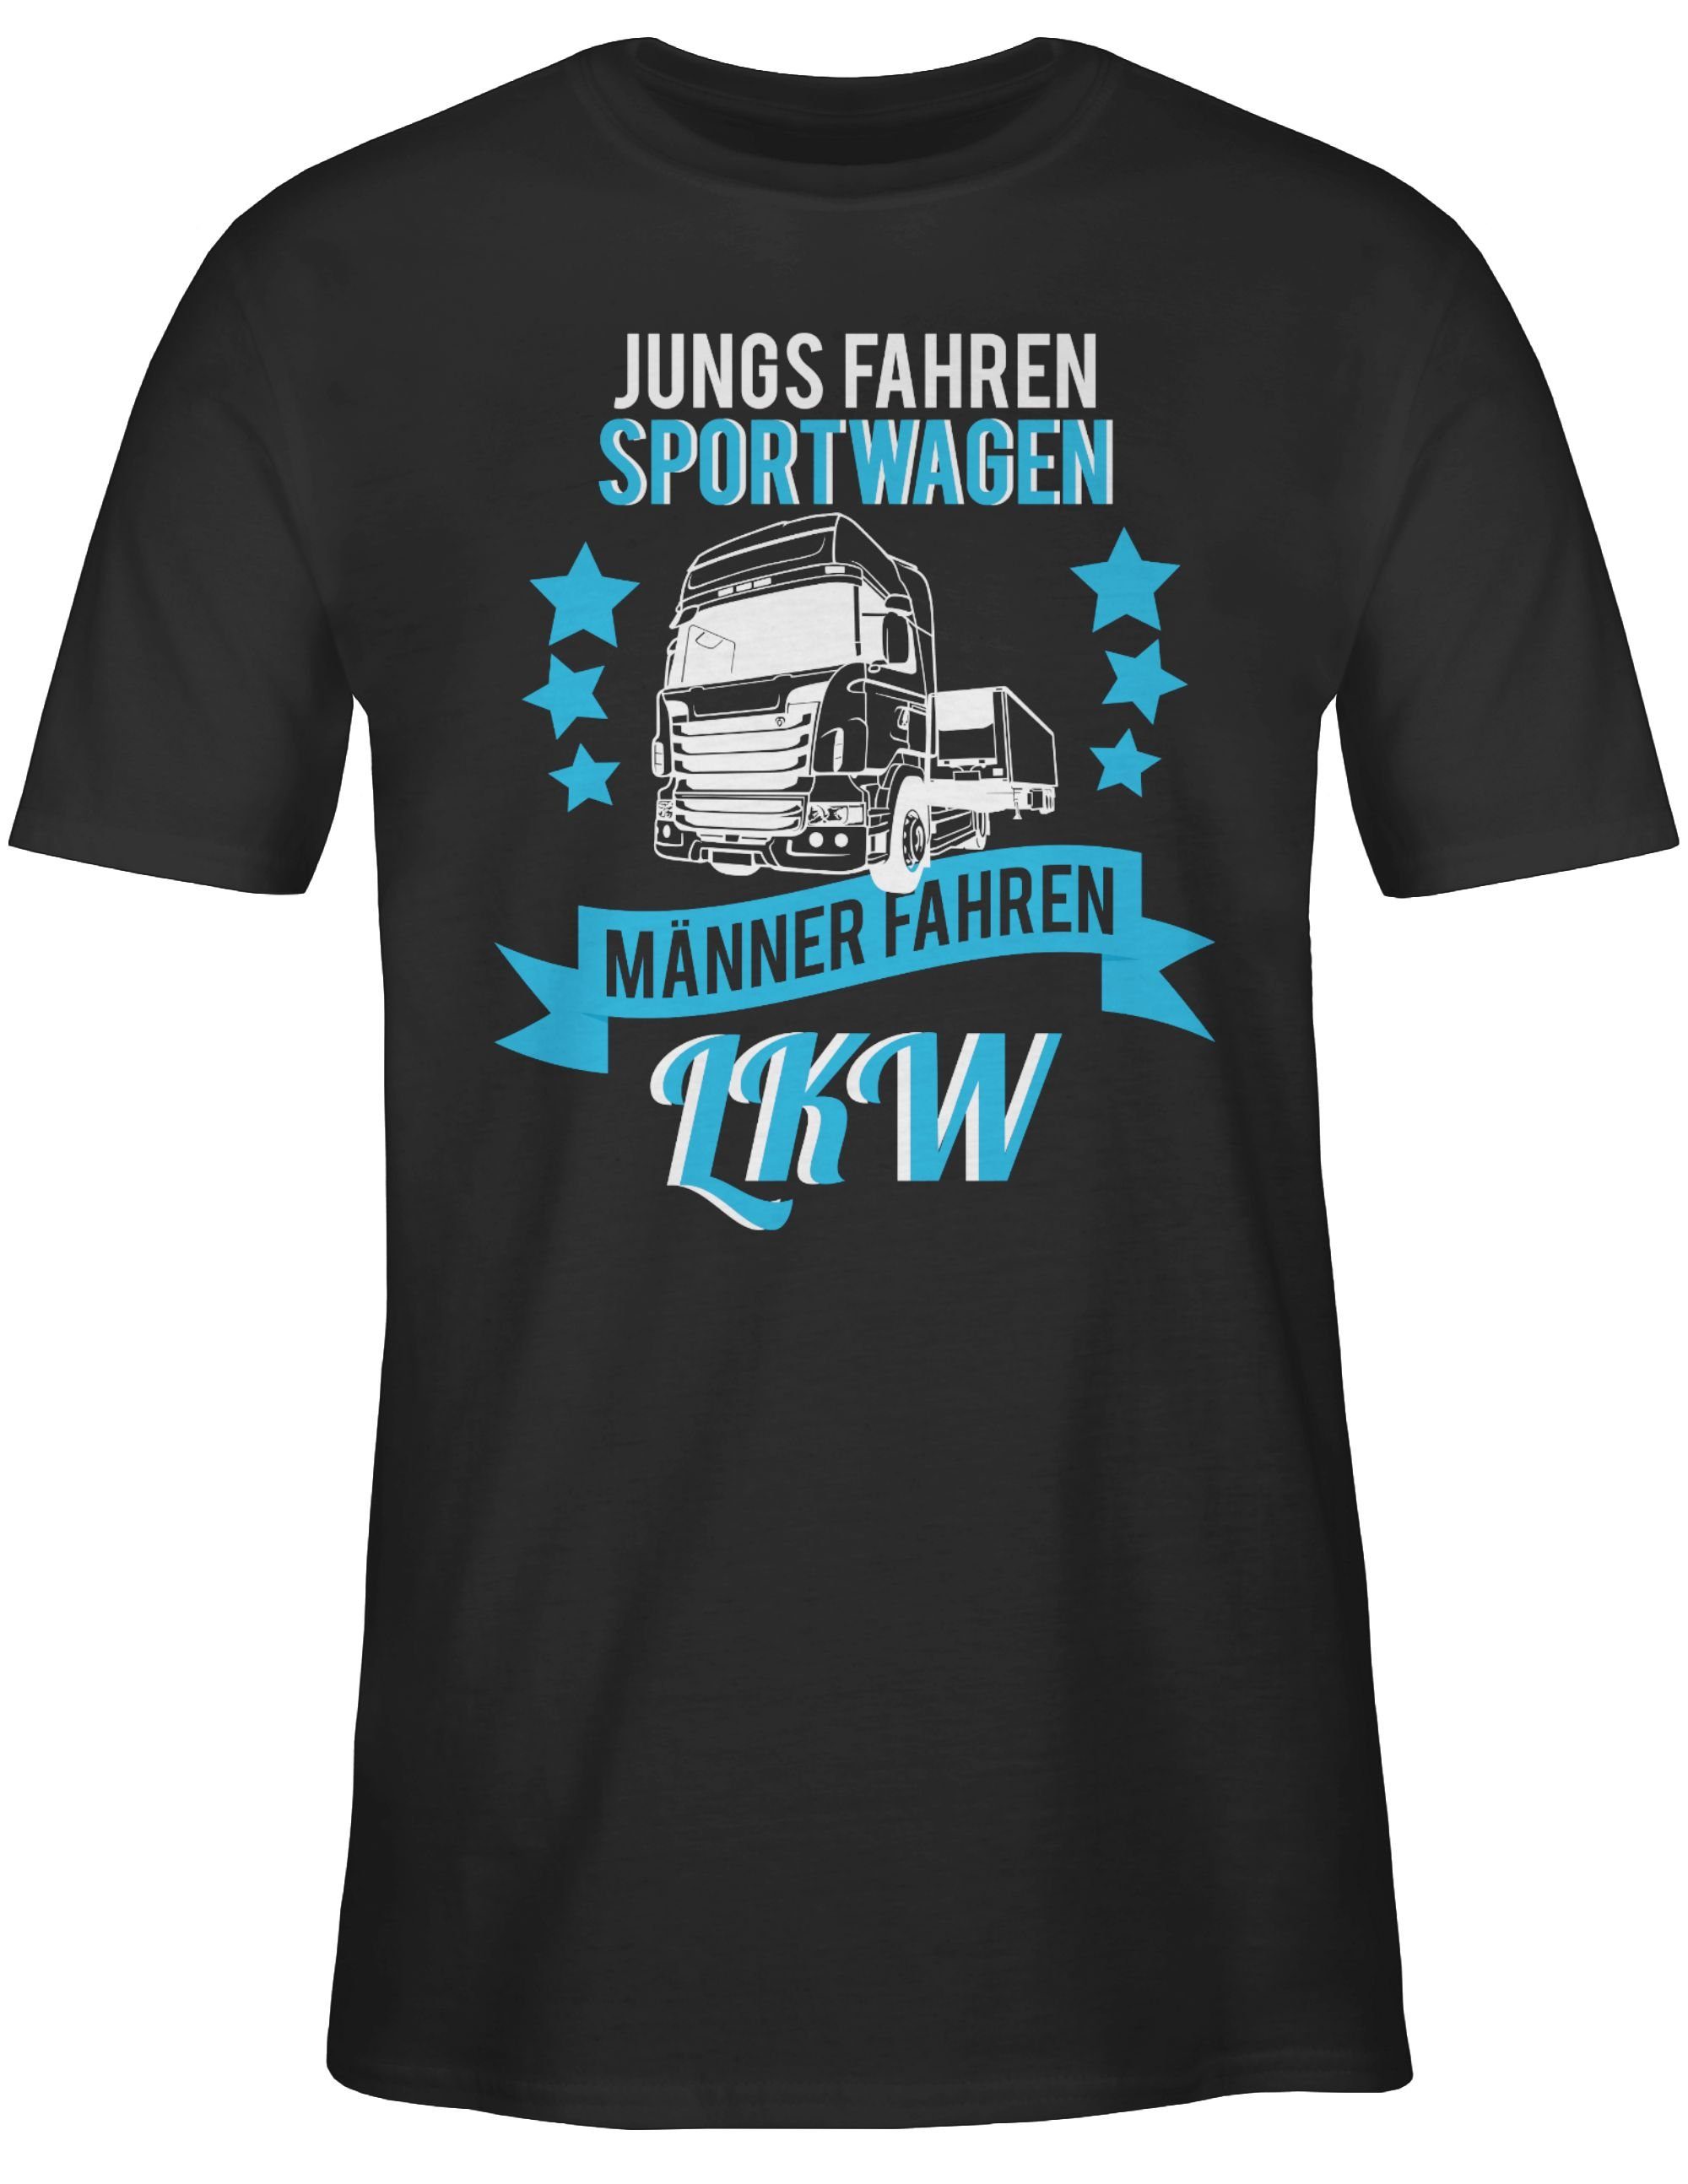 Männer Geschenke fahren LKW Shirtracer LKW Schwarz Fahrer T-Shirt 01 Jungs echte Sportwagen